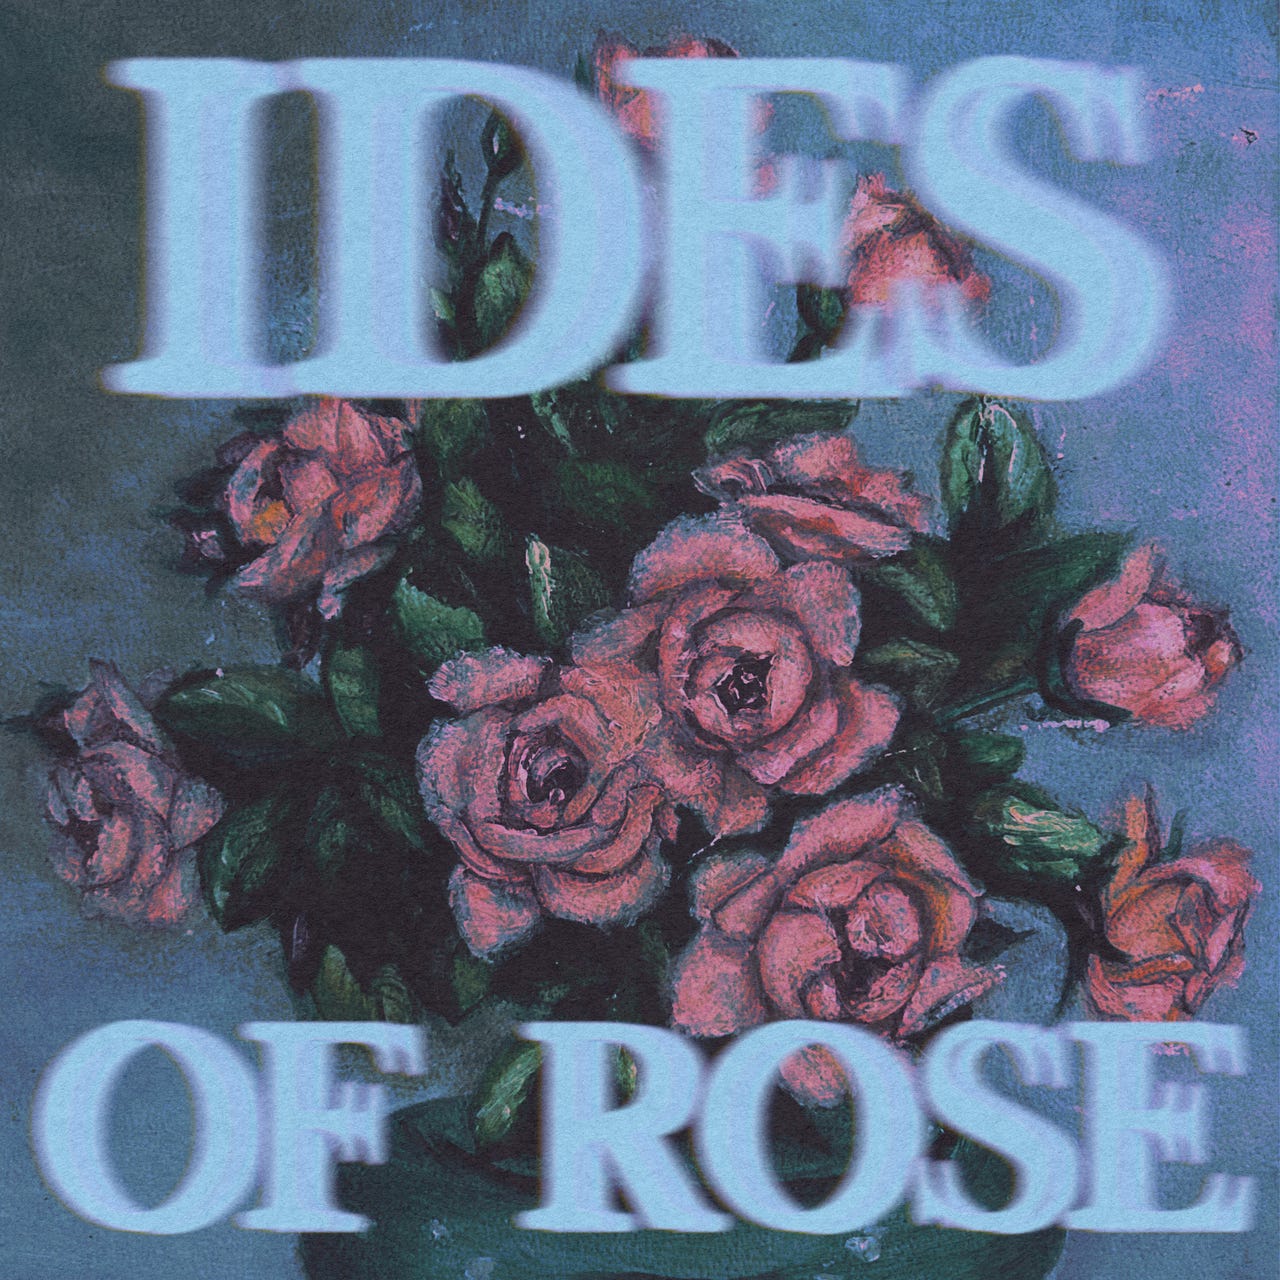 Ides of Rose